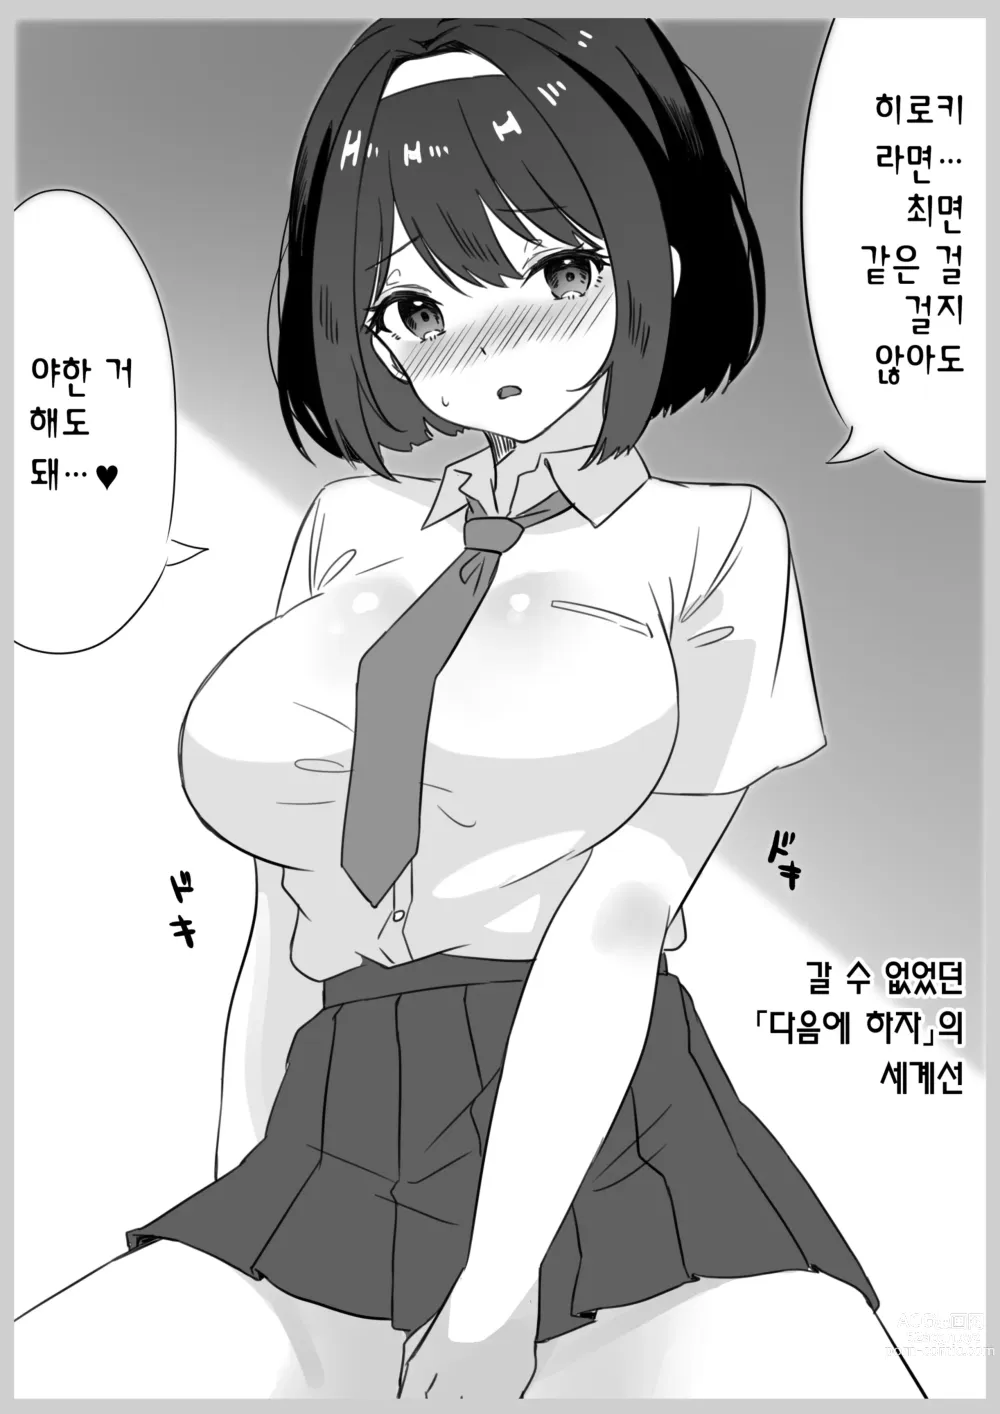 Page 52 of doujinshi 최면술이라면 거유 JK에게 무엇이든 할 수 있다는 게 정말인가요?